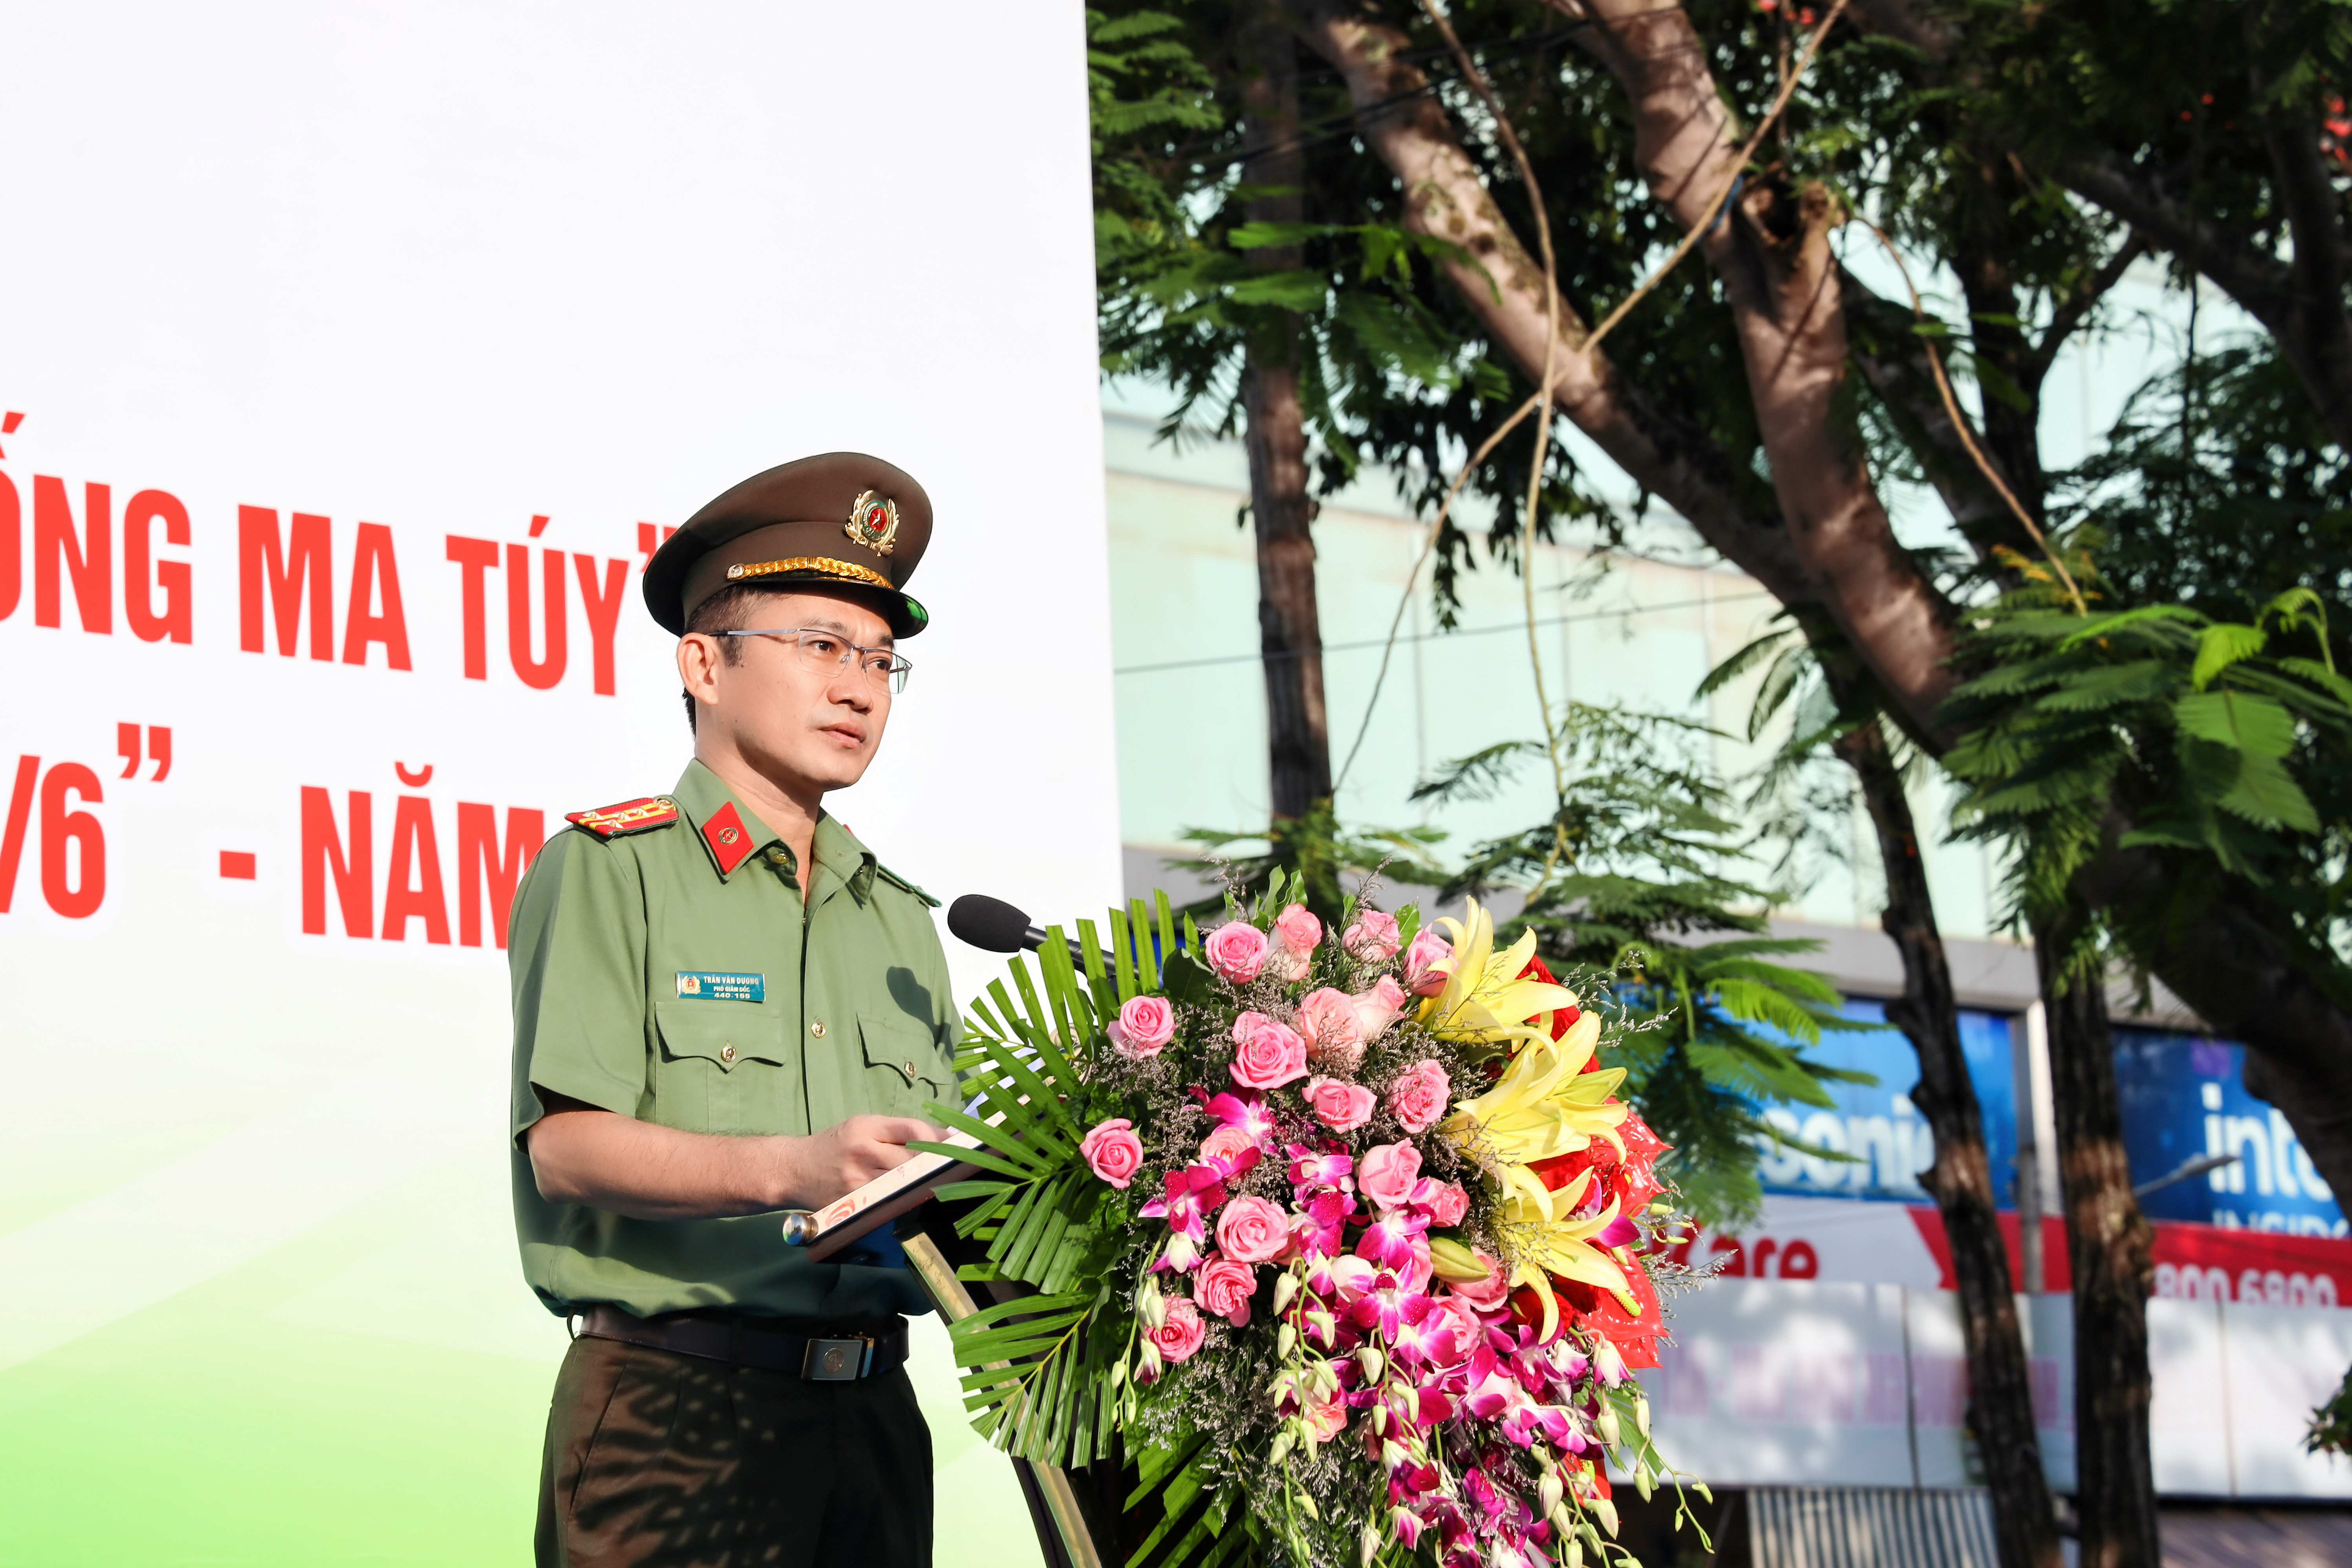 Đại tá Trần Văn Dương - Ủy viên Ban Chấp hành Đảng bộ thành phố, Phó Bí thư Đảng ủy, Phó Giám đốc Công an TP. Cần Thơ phát biểu tại buổi lễ.